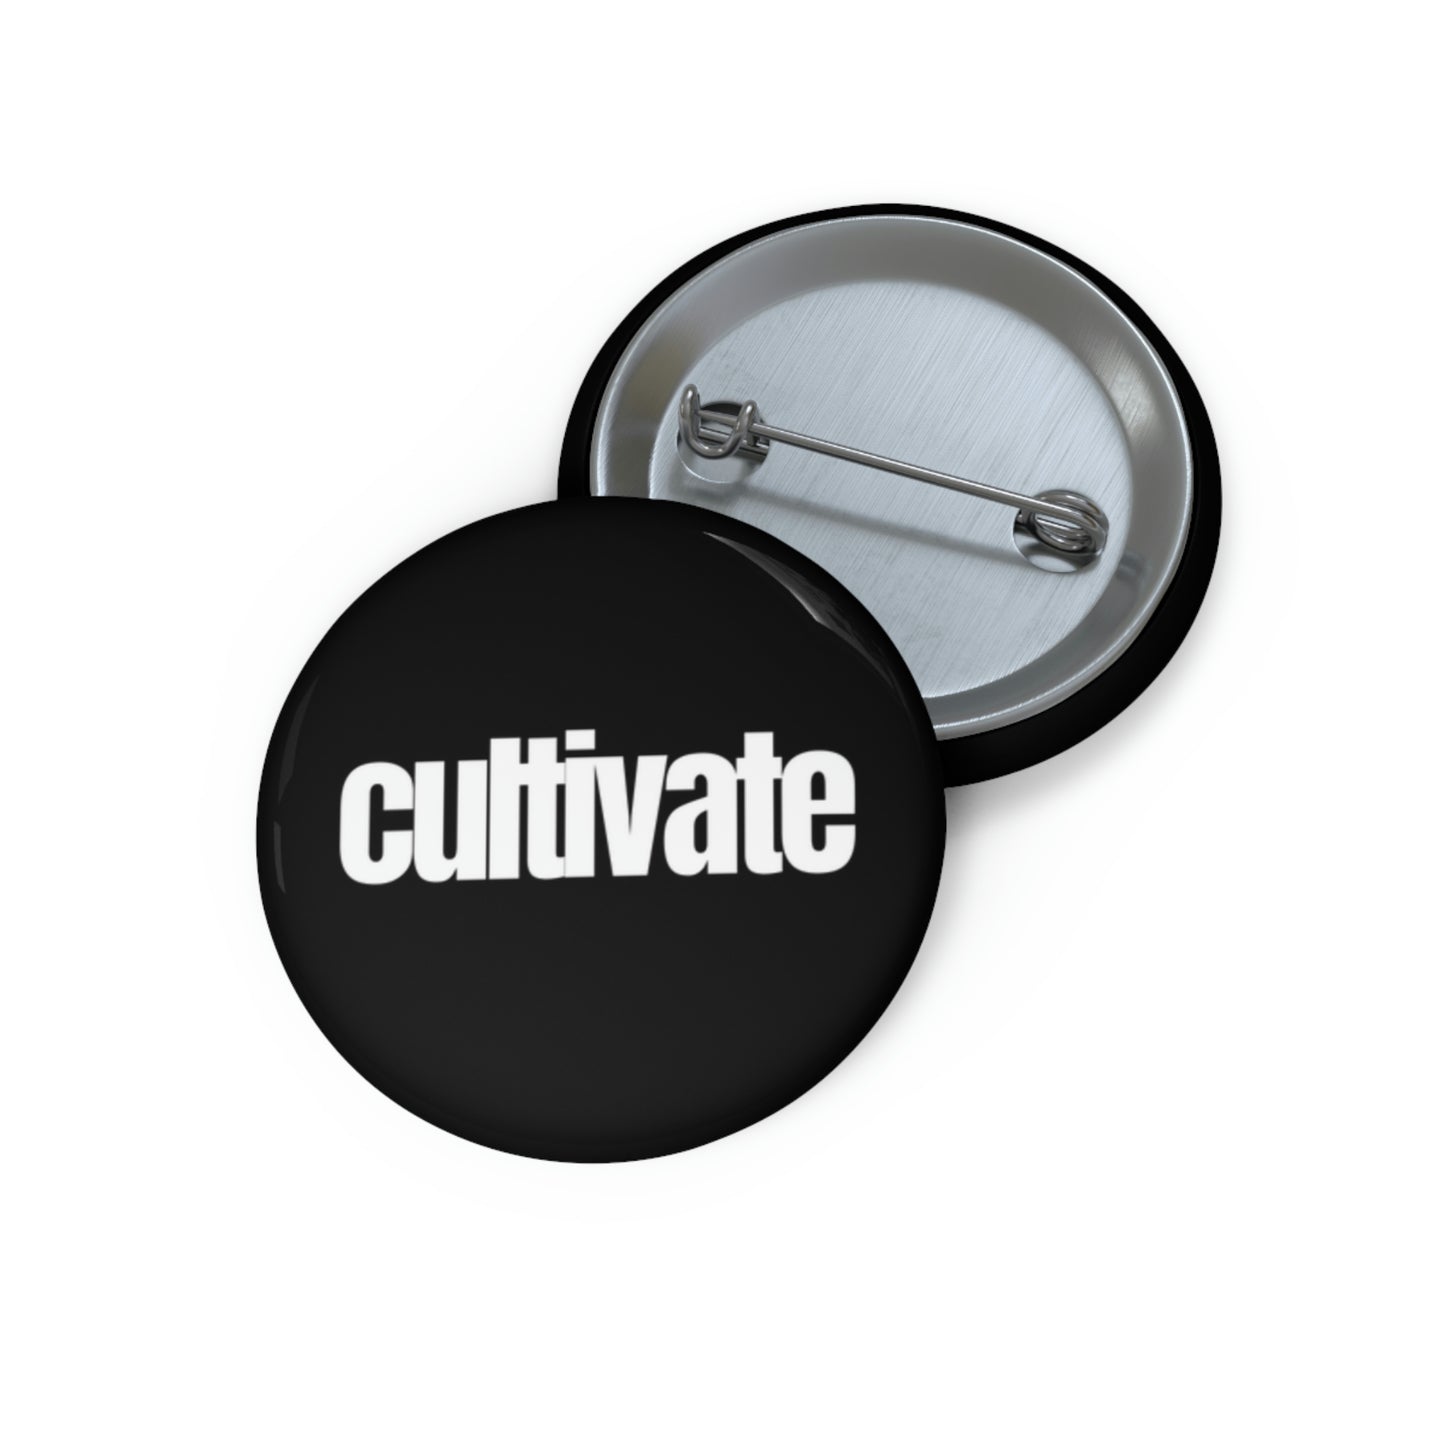 "cultivate" Pin Button - white